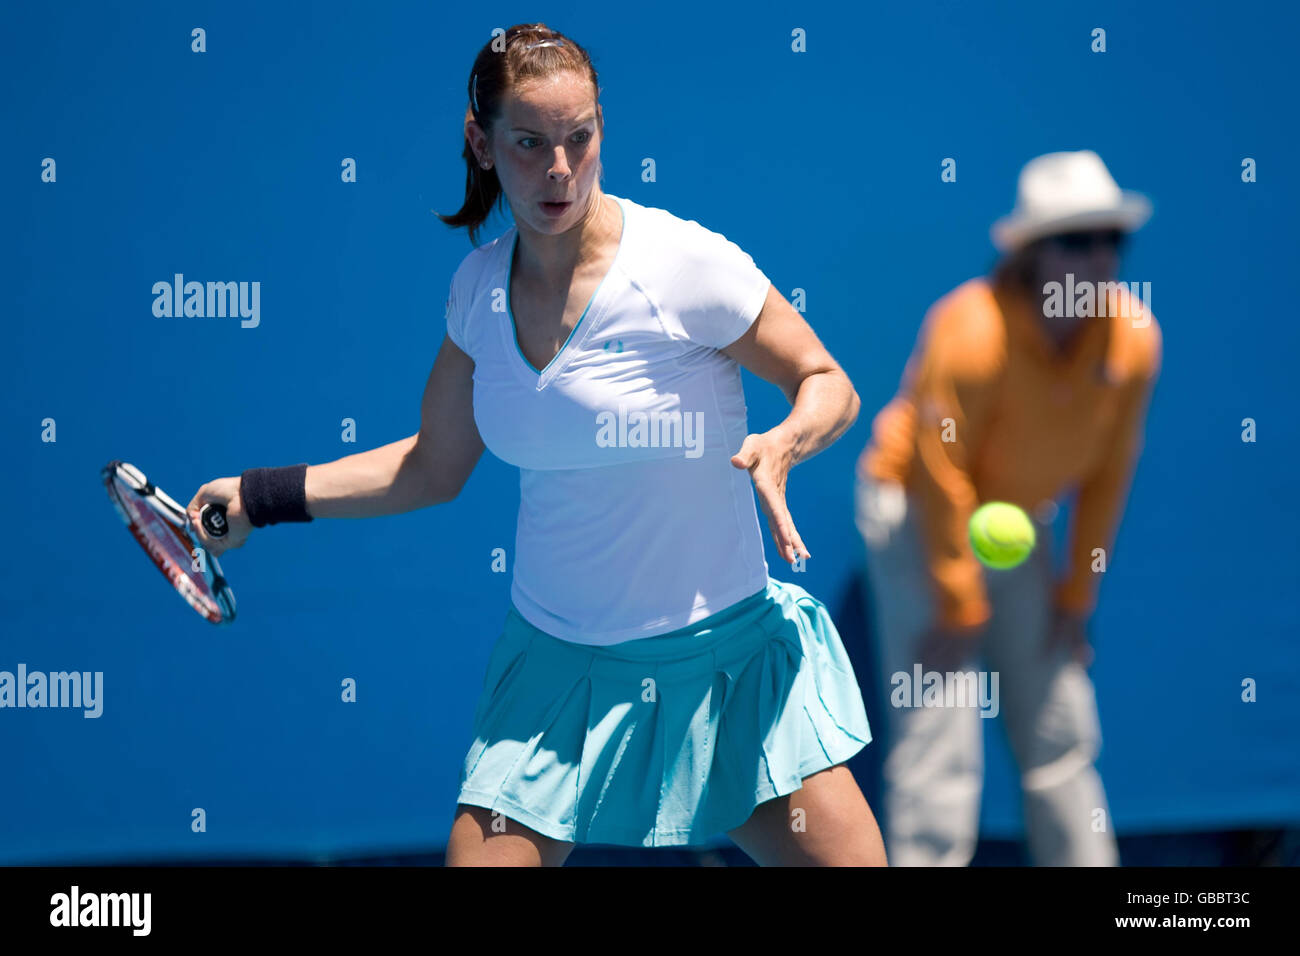 Katie O'Brien, de Grande-Bretagne, en action contre Monica Niculescu, de Roumanie, lors de l'Open d'Australie 2009 à Melbourne Park, Melbourne, Australie. Banque D'Images